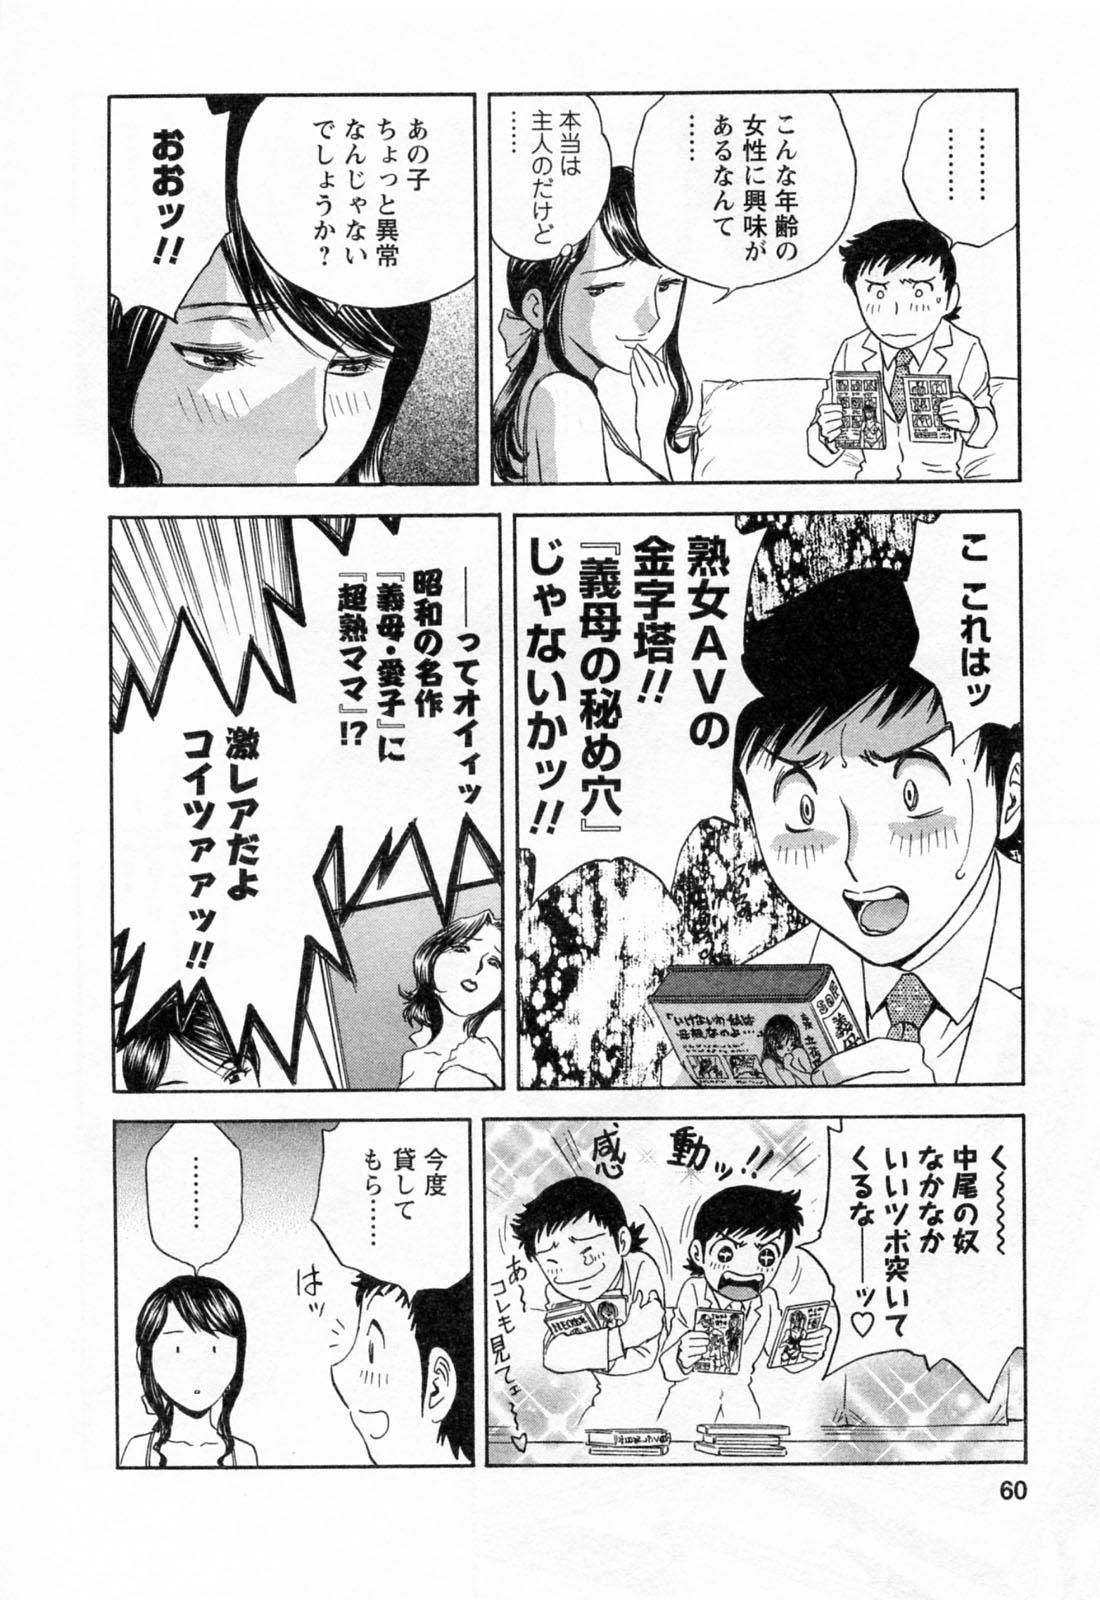 [Hidemaru] Mo-Retsu! Boin Sensei (Boing Boing Teacher) Vol.4 61